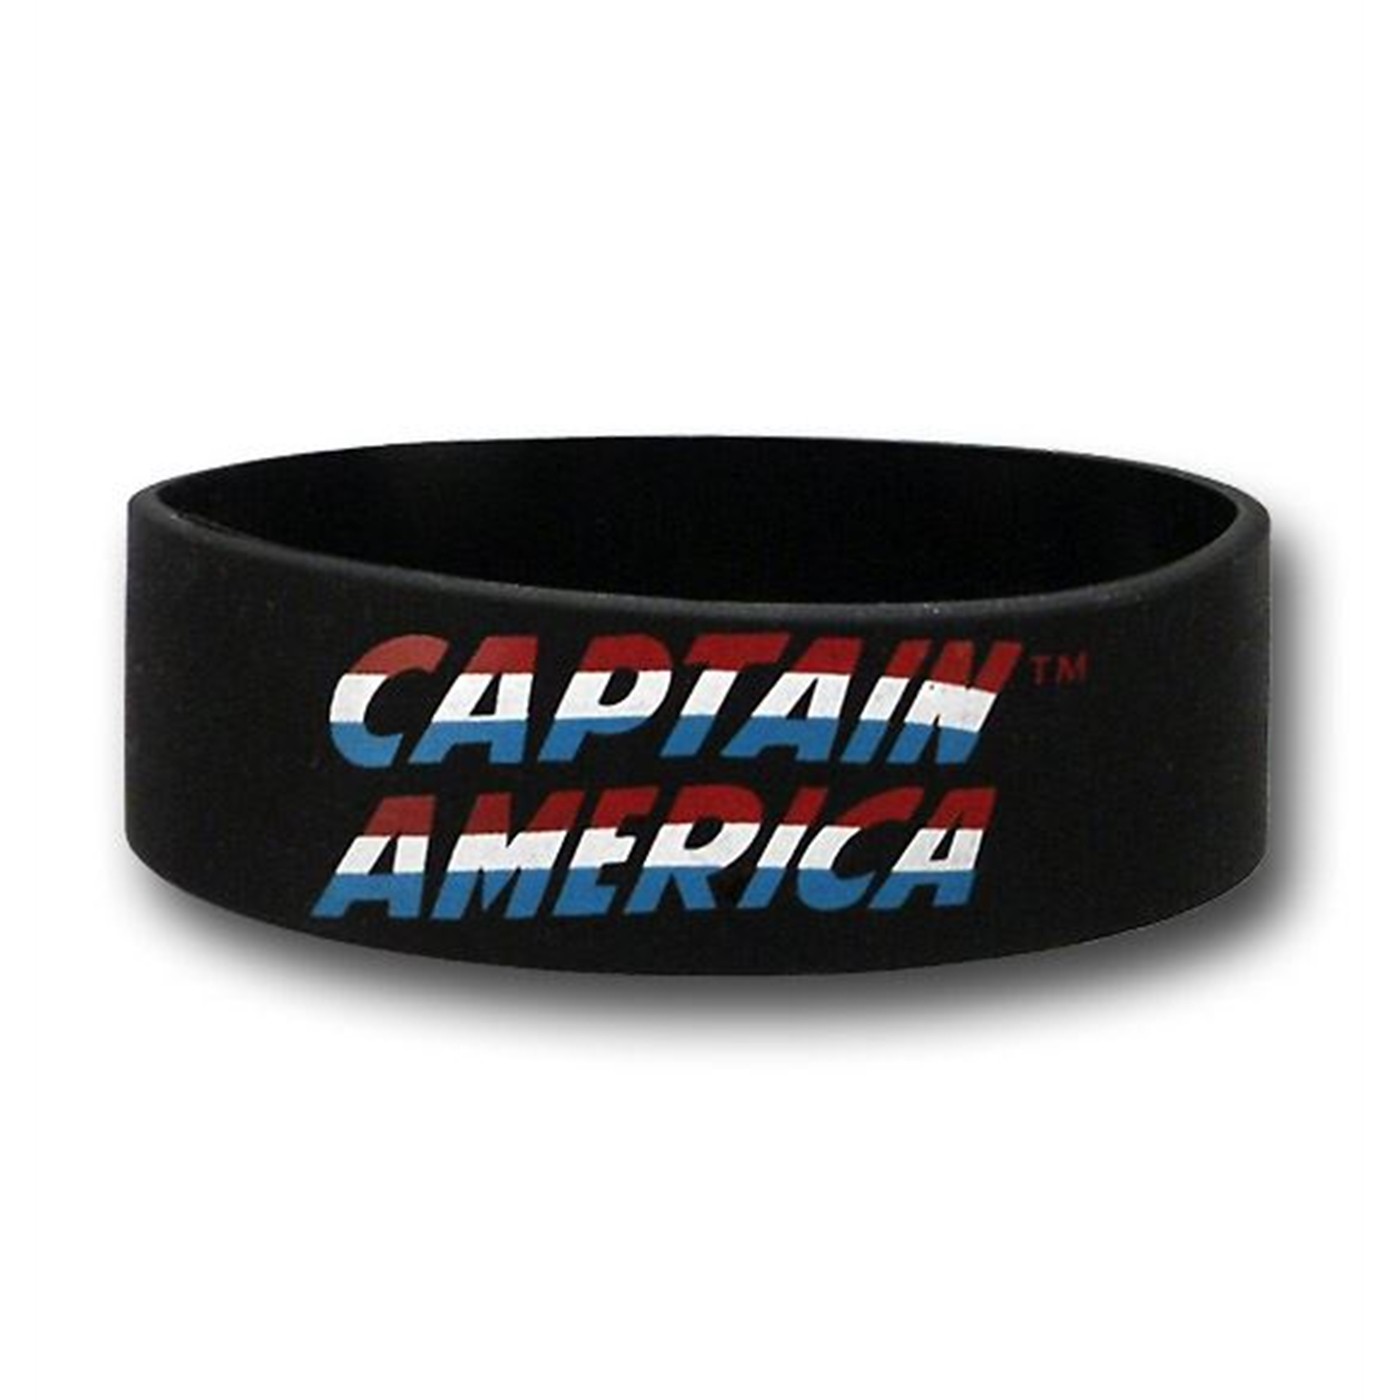 Captain America Rubber Wristband